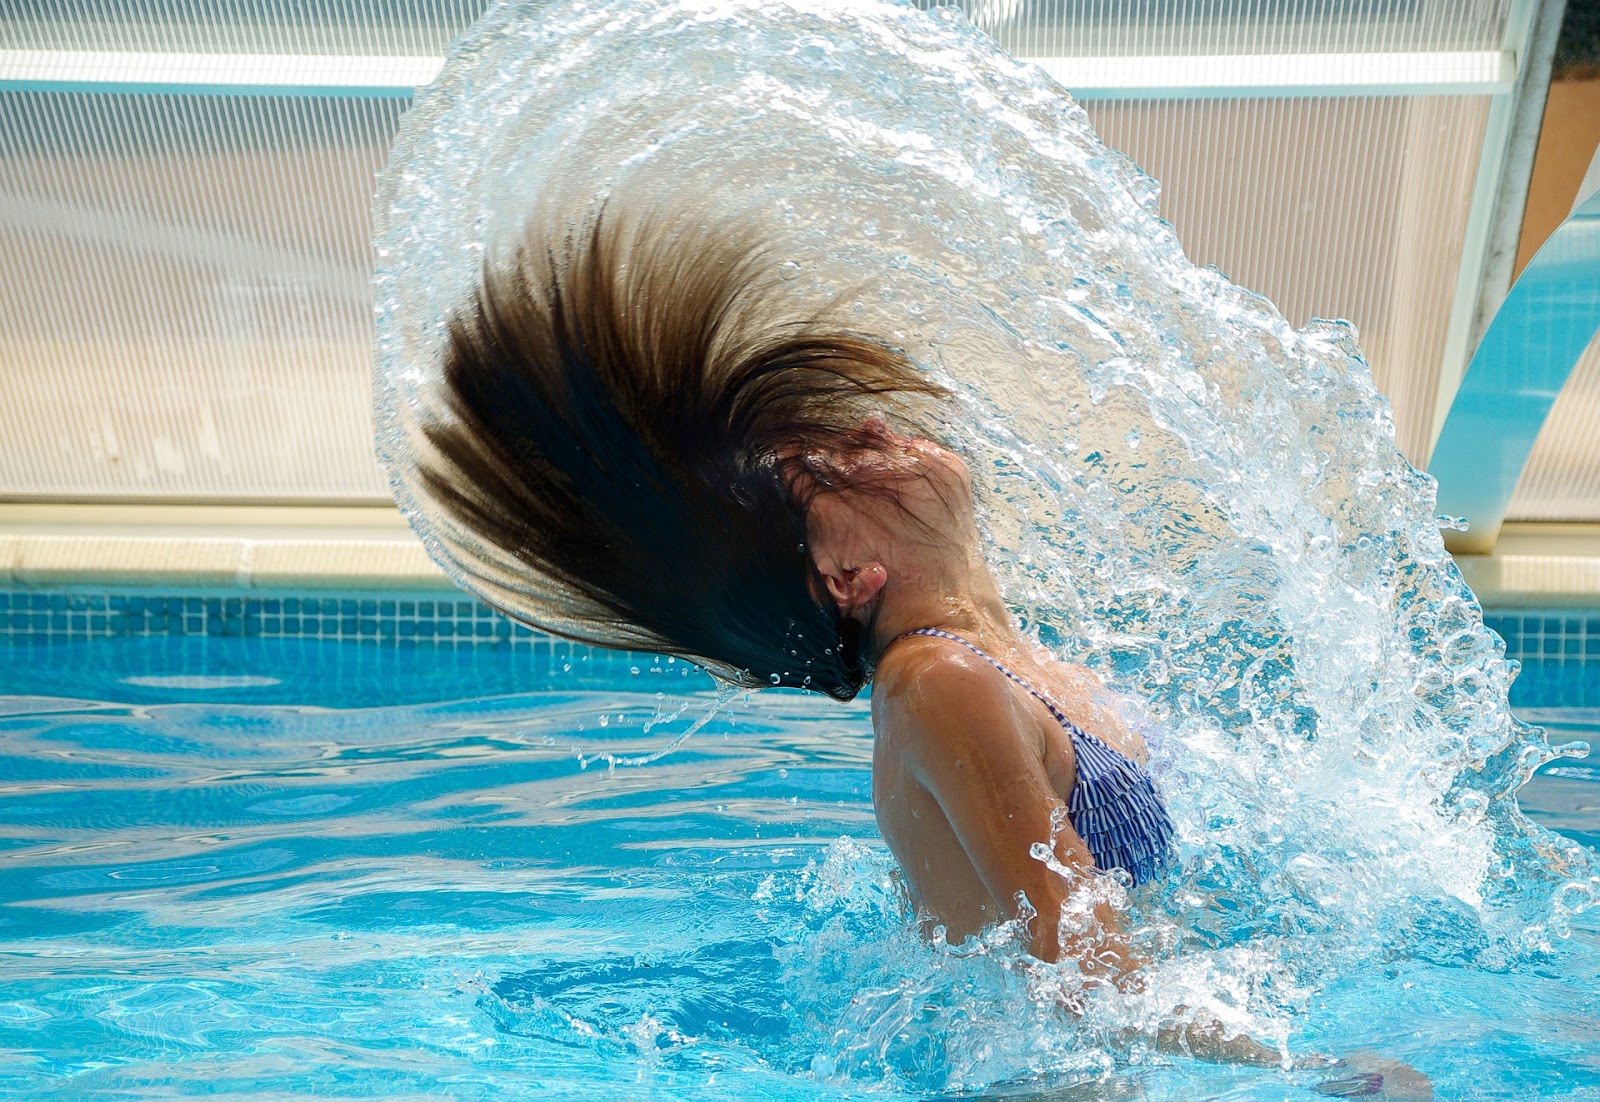 Comment protéger sa peau et ses cheveux après la piscine?